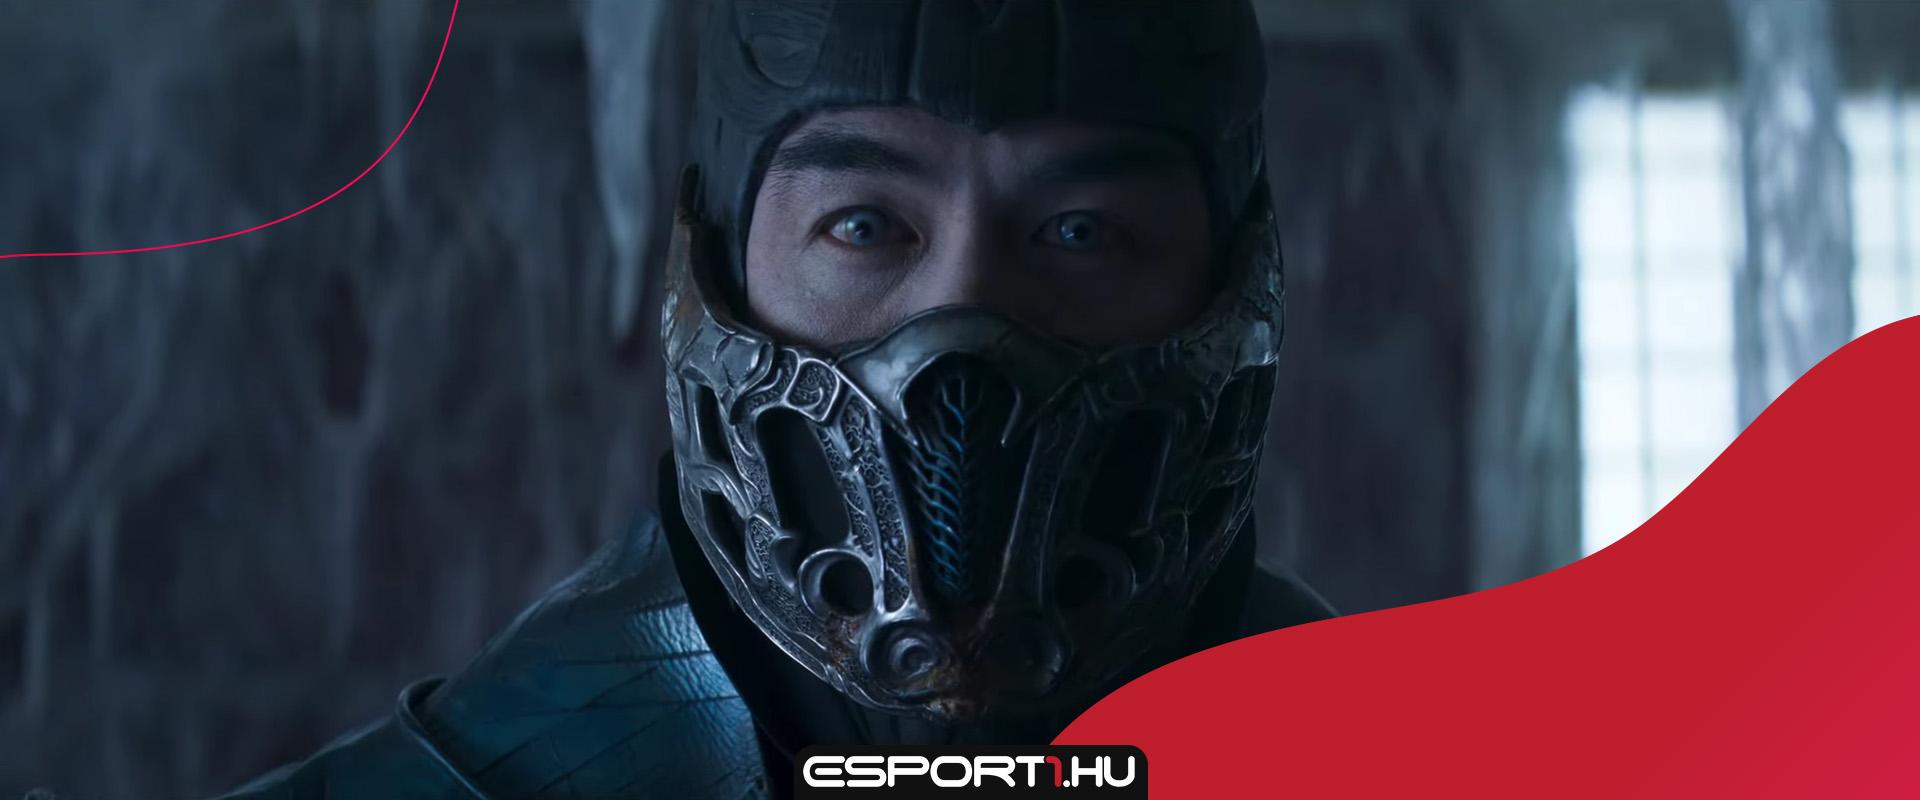 Kíméletlen, de nagy bizakodásra ad okot az új Mortal Kombat film trailer